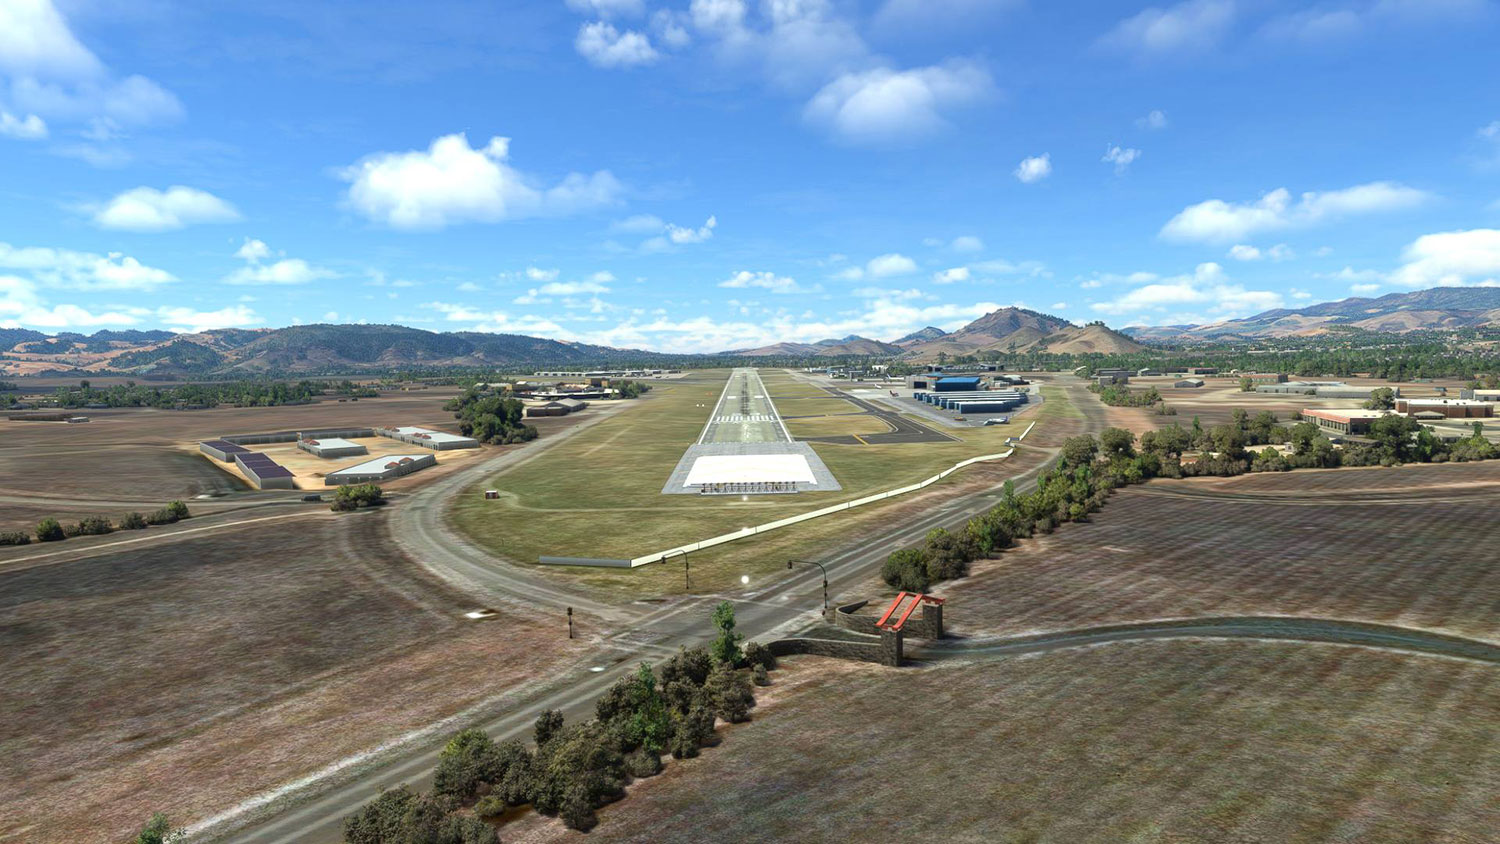 Just Flight - KSBP - San Luis Obispo Regional Airport MSFS